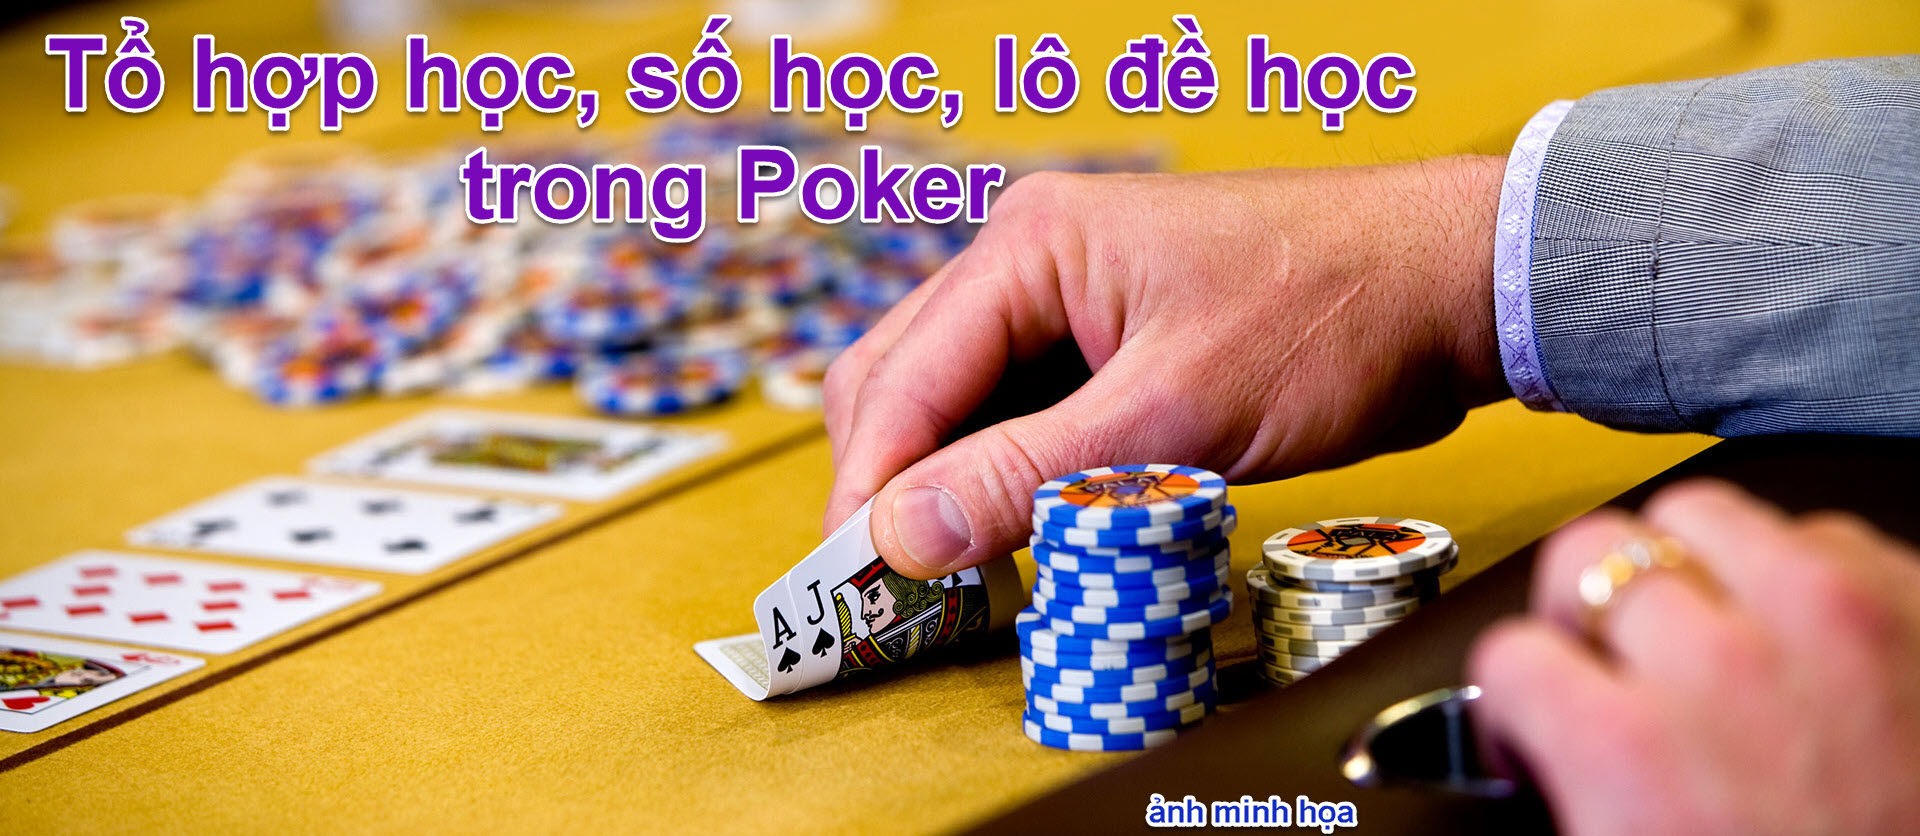 to hoc so hoc, lo de hoc trong Poker 01 ver 01.jpg